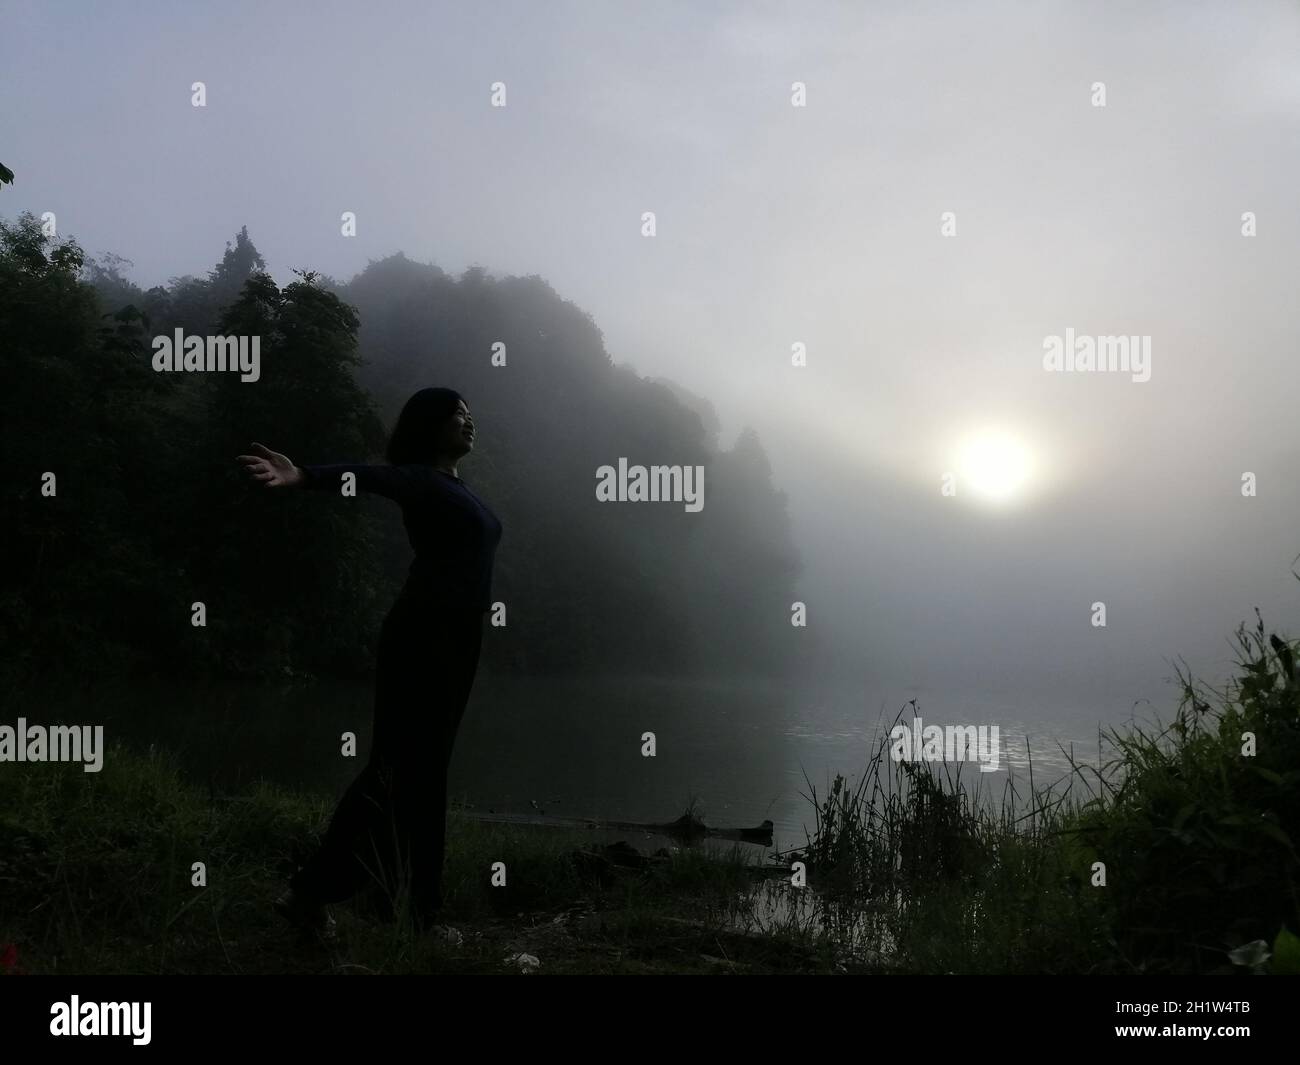 Junge asiatische Frau, die allein auf dem See steht und einen friedlichen Moment des Sonnenaufgangs in grau-bewölktem Himmel am frühen, kühlen Morgen genießt. Konzepte des Gewinners, Stockfoto